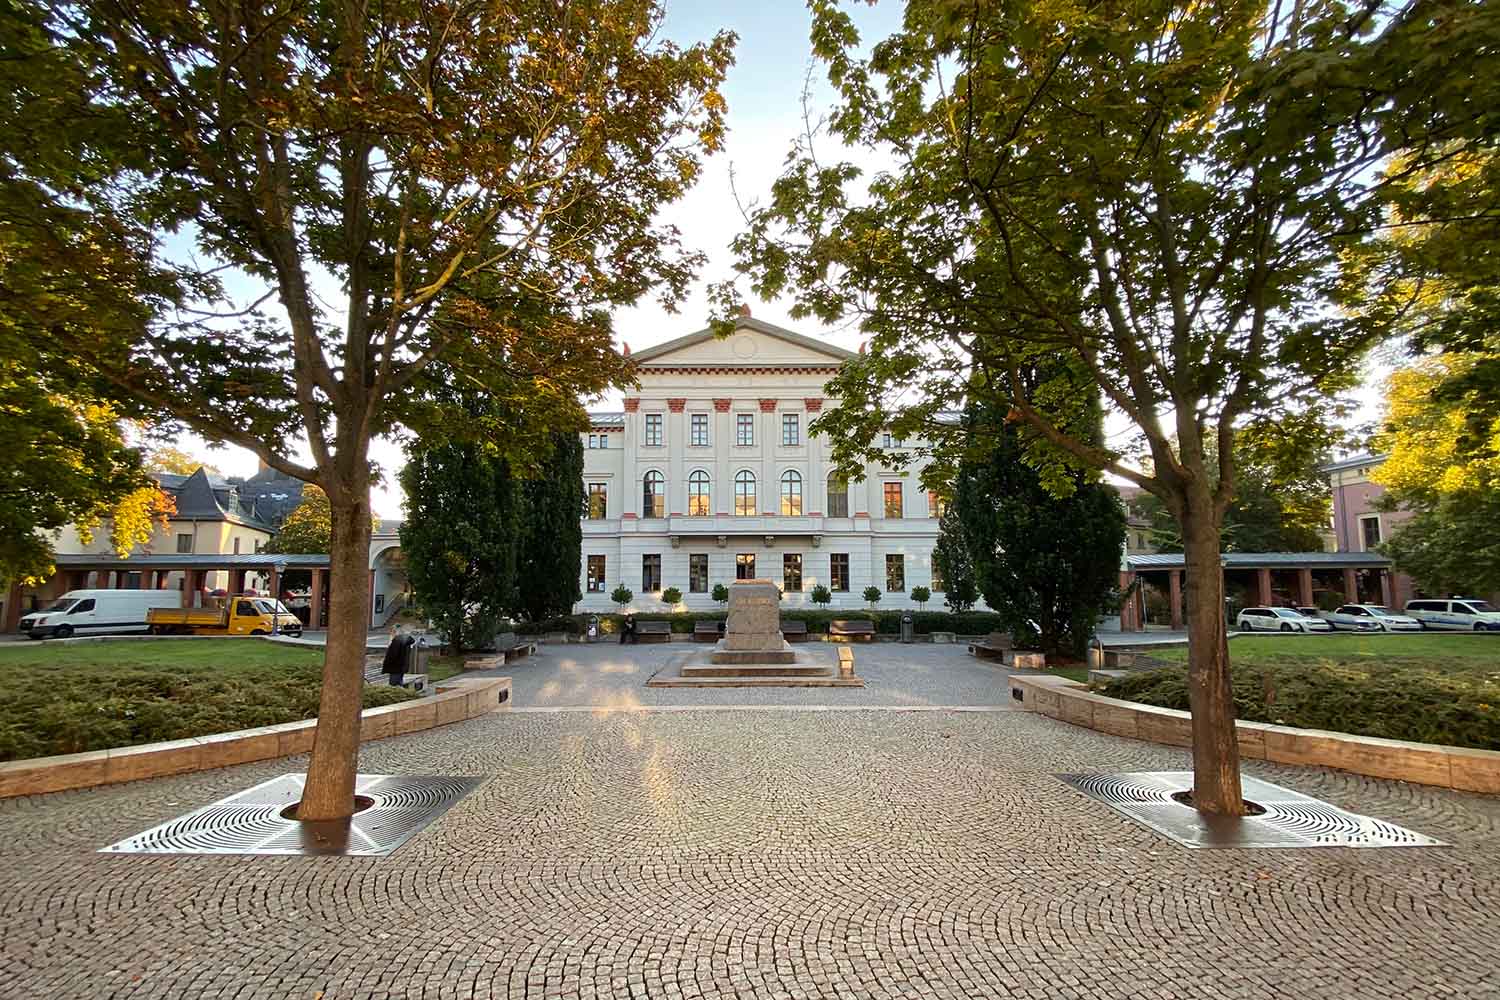 Exterior view of Monami Weimar